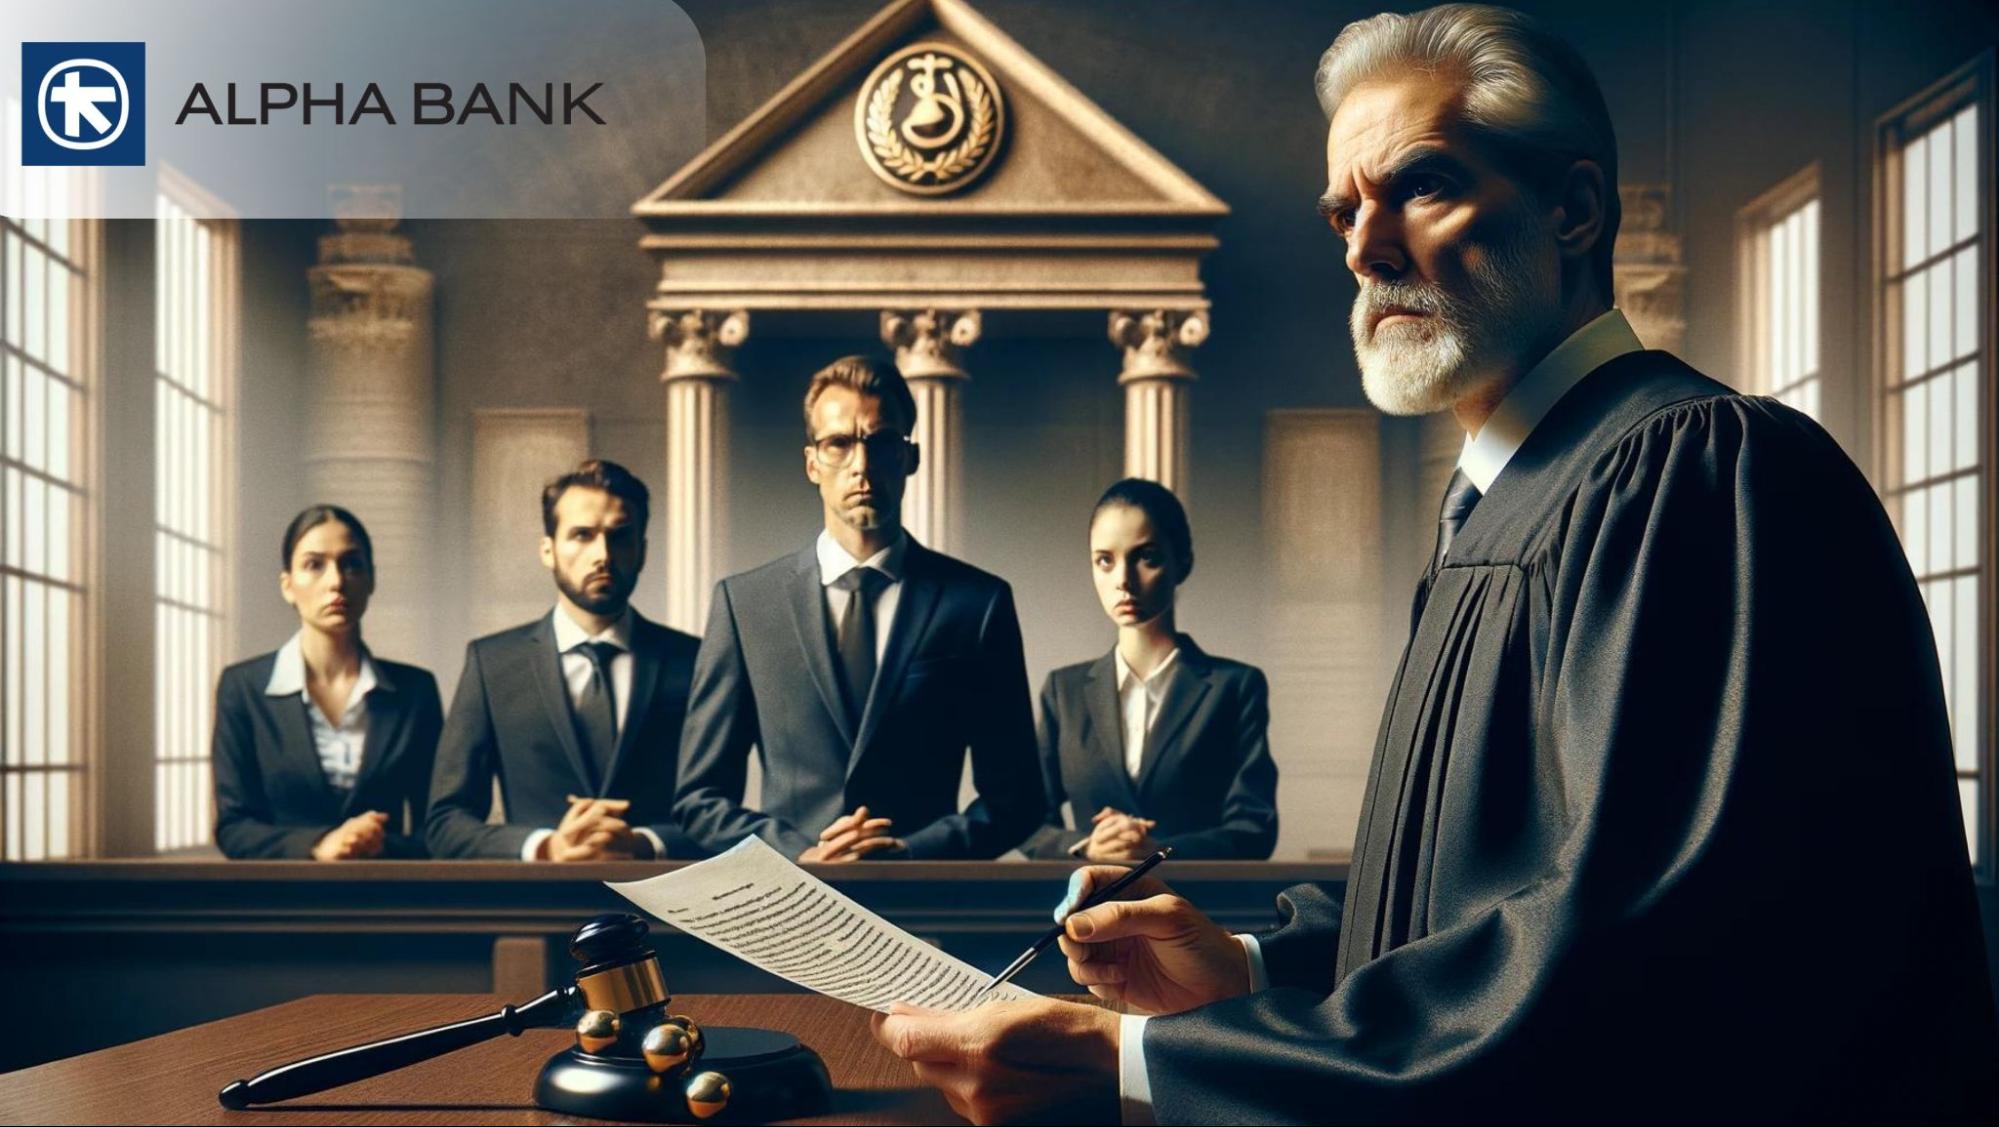 Alpha Bank condamnée pour prêt en francs suisses: Les conséquences pour les clients et les risques associés